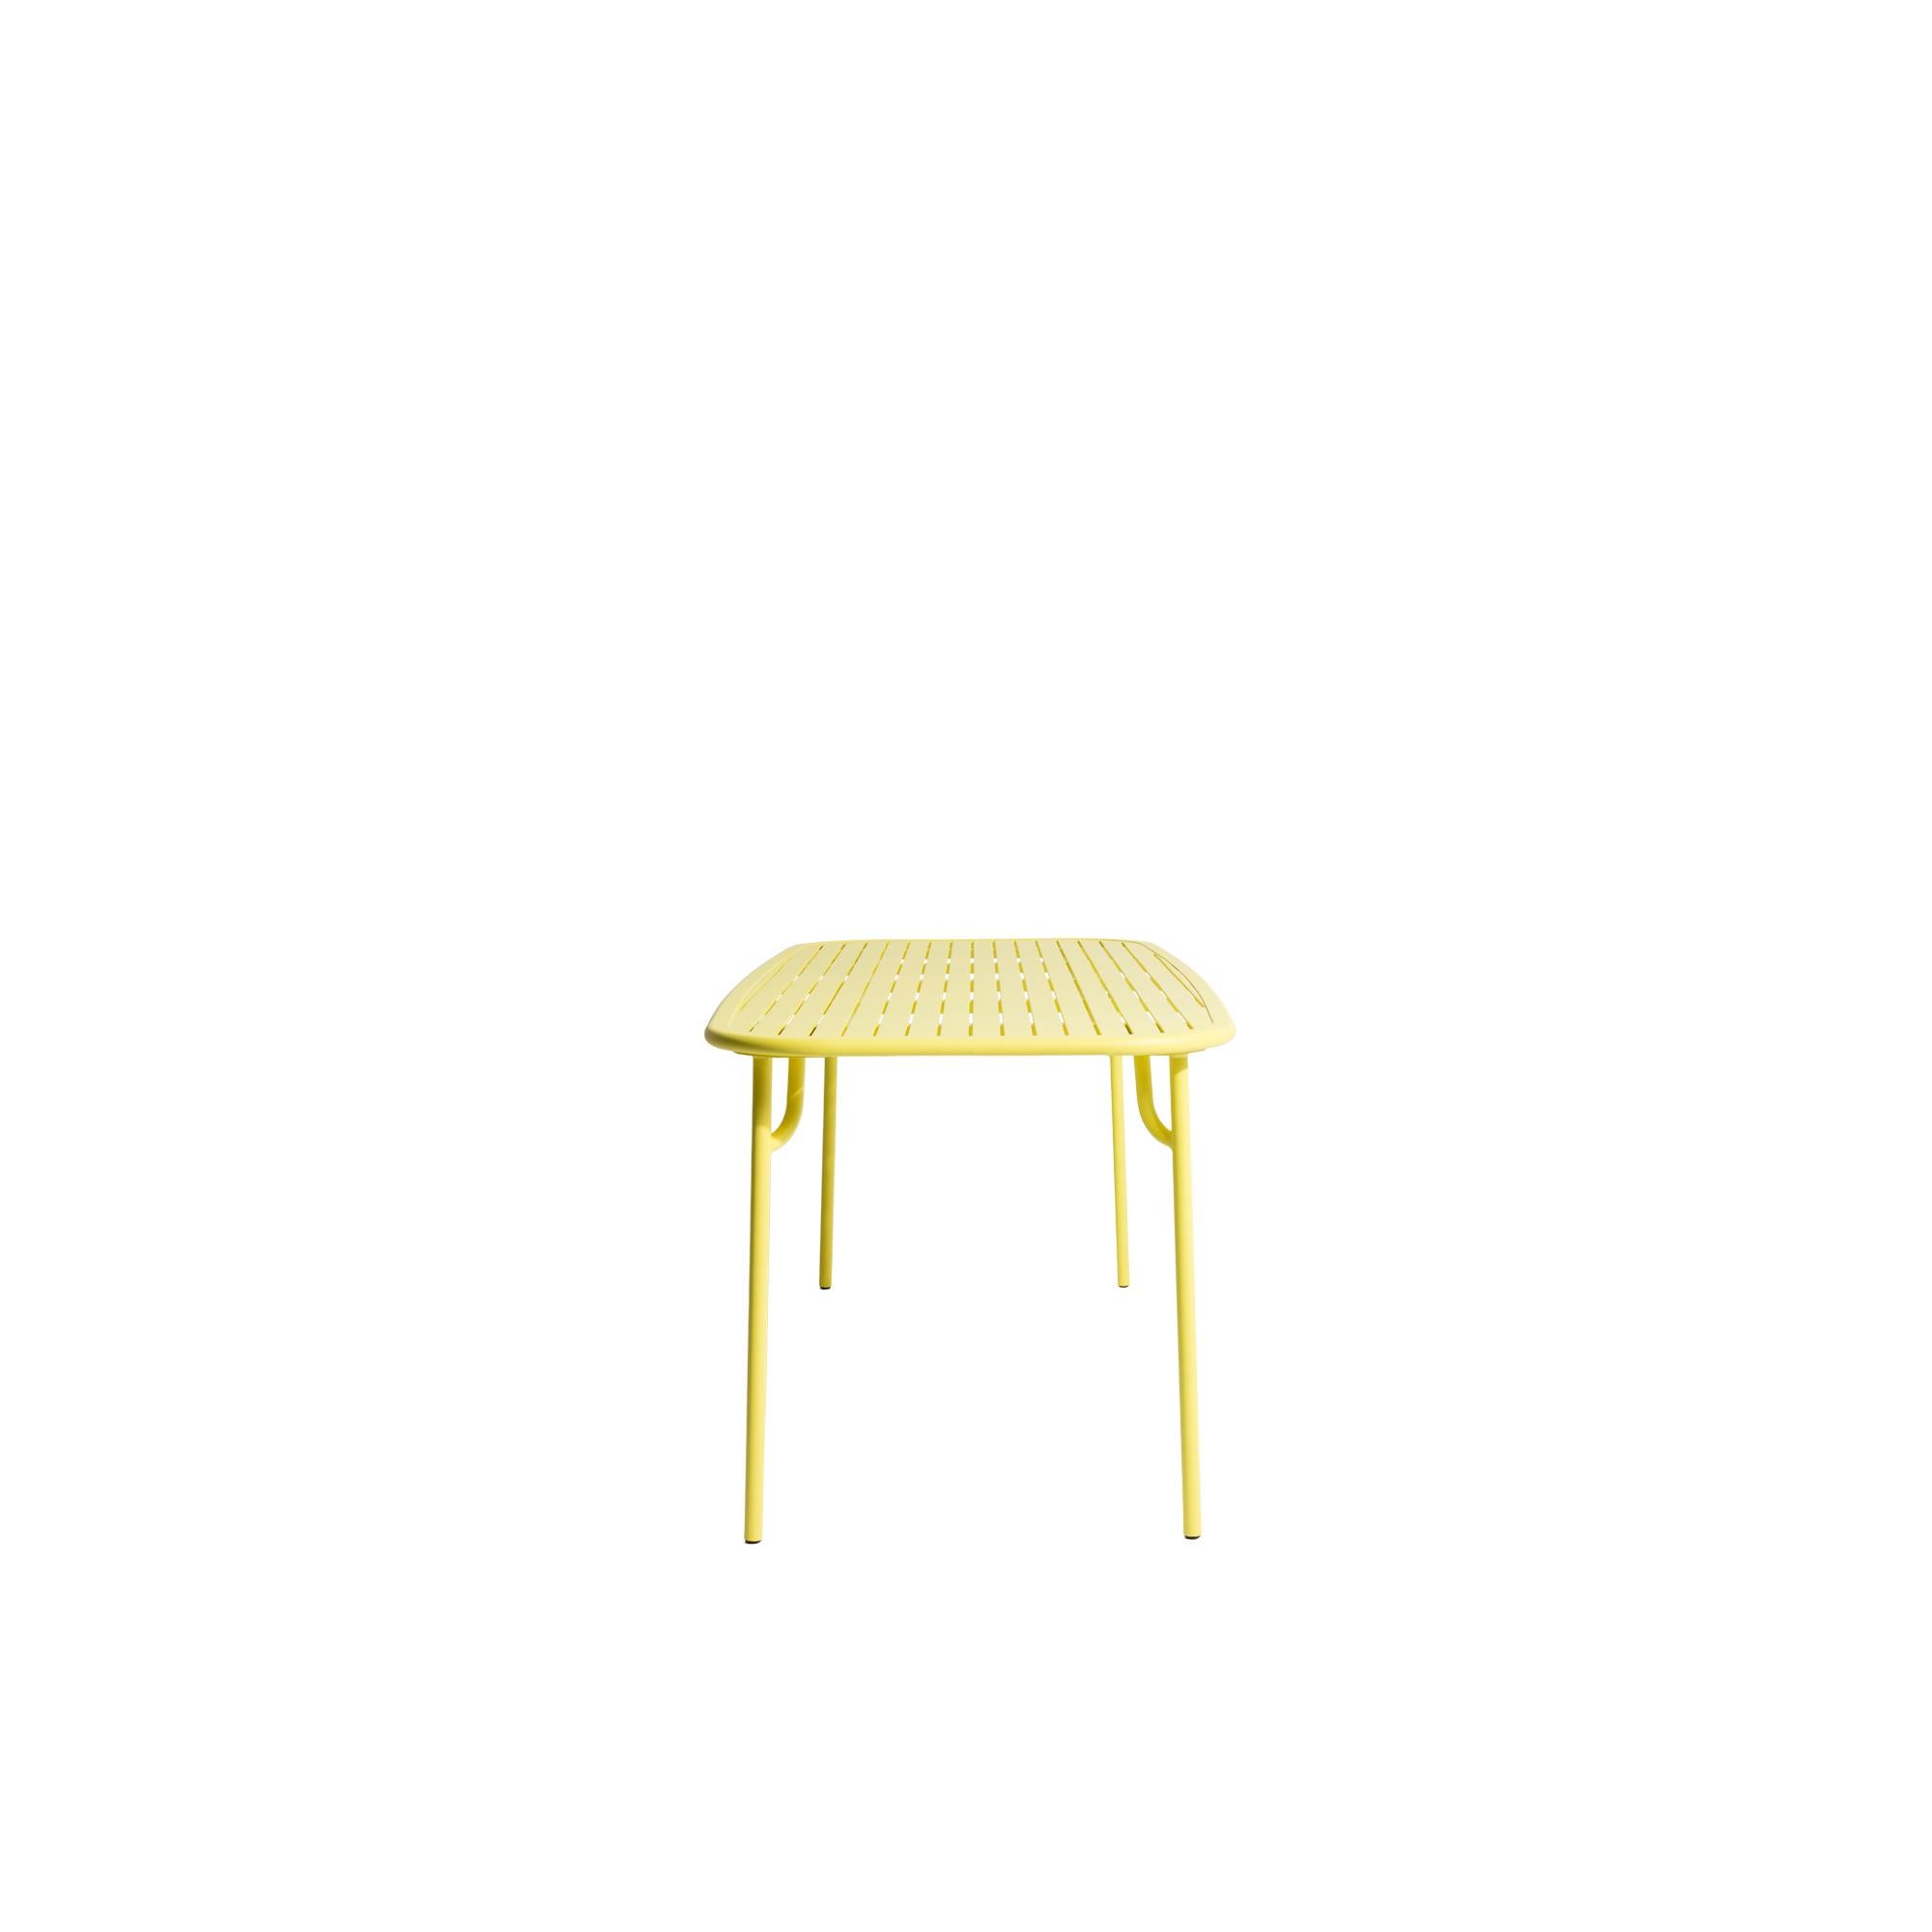 Petite Friture Week-End Medium Rectangular Dining Table in Yellow Aluminium with Slats by Studio BrichetZiegler, 2017

Die Week-End-Kollektion besteht aus einer kompletten Palette von Außenmöbeln mit mattierter Epoxidharzlackierung mit